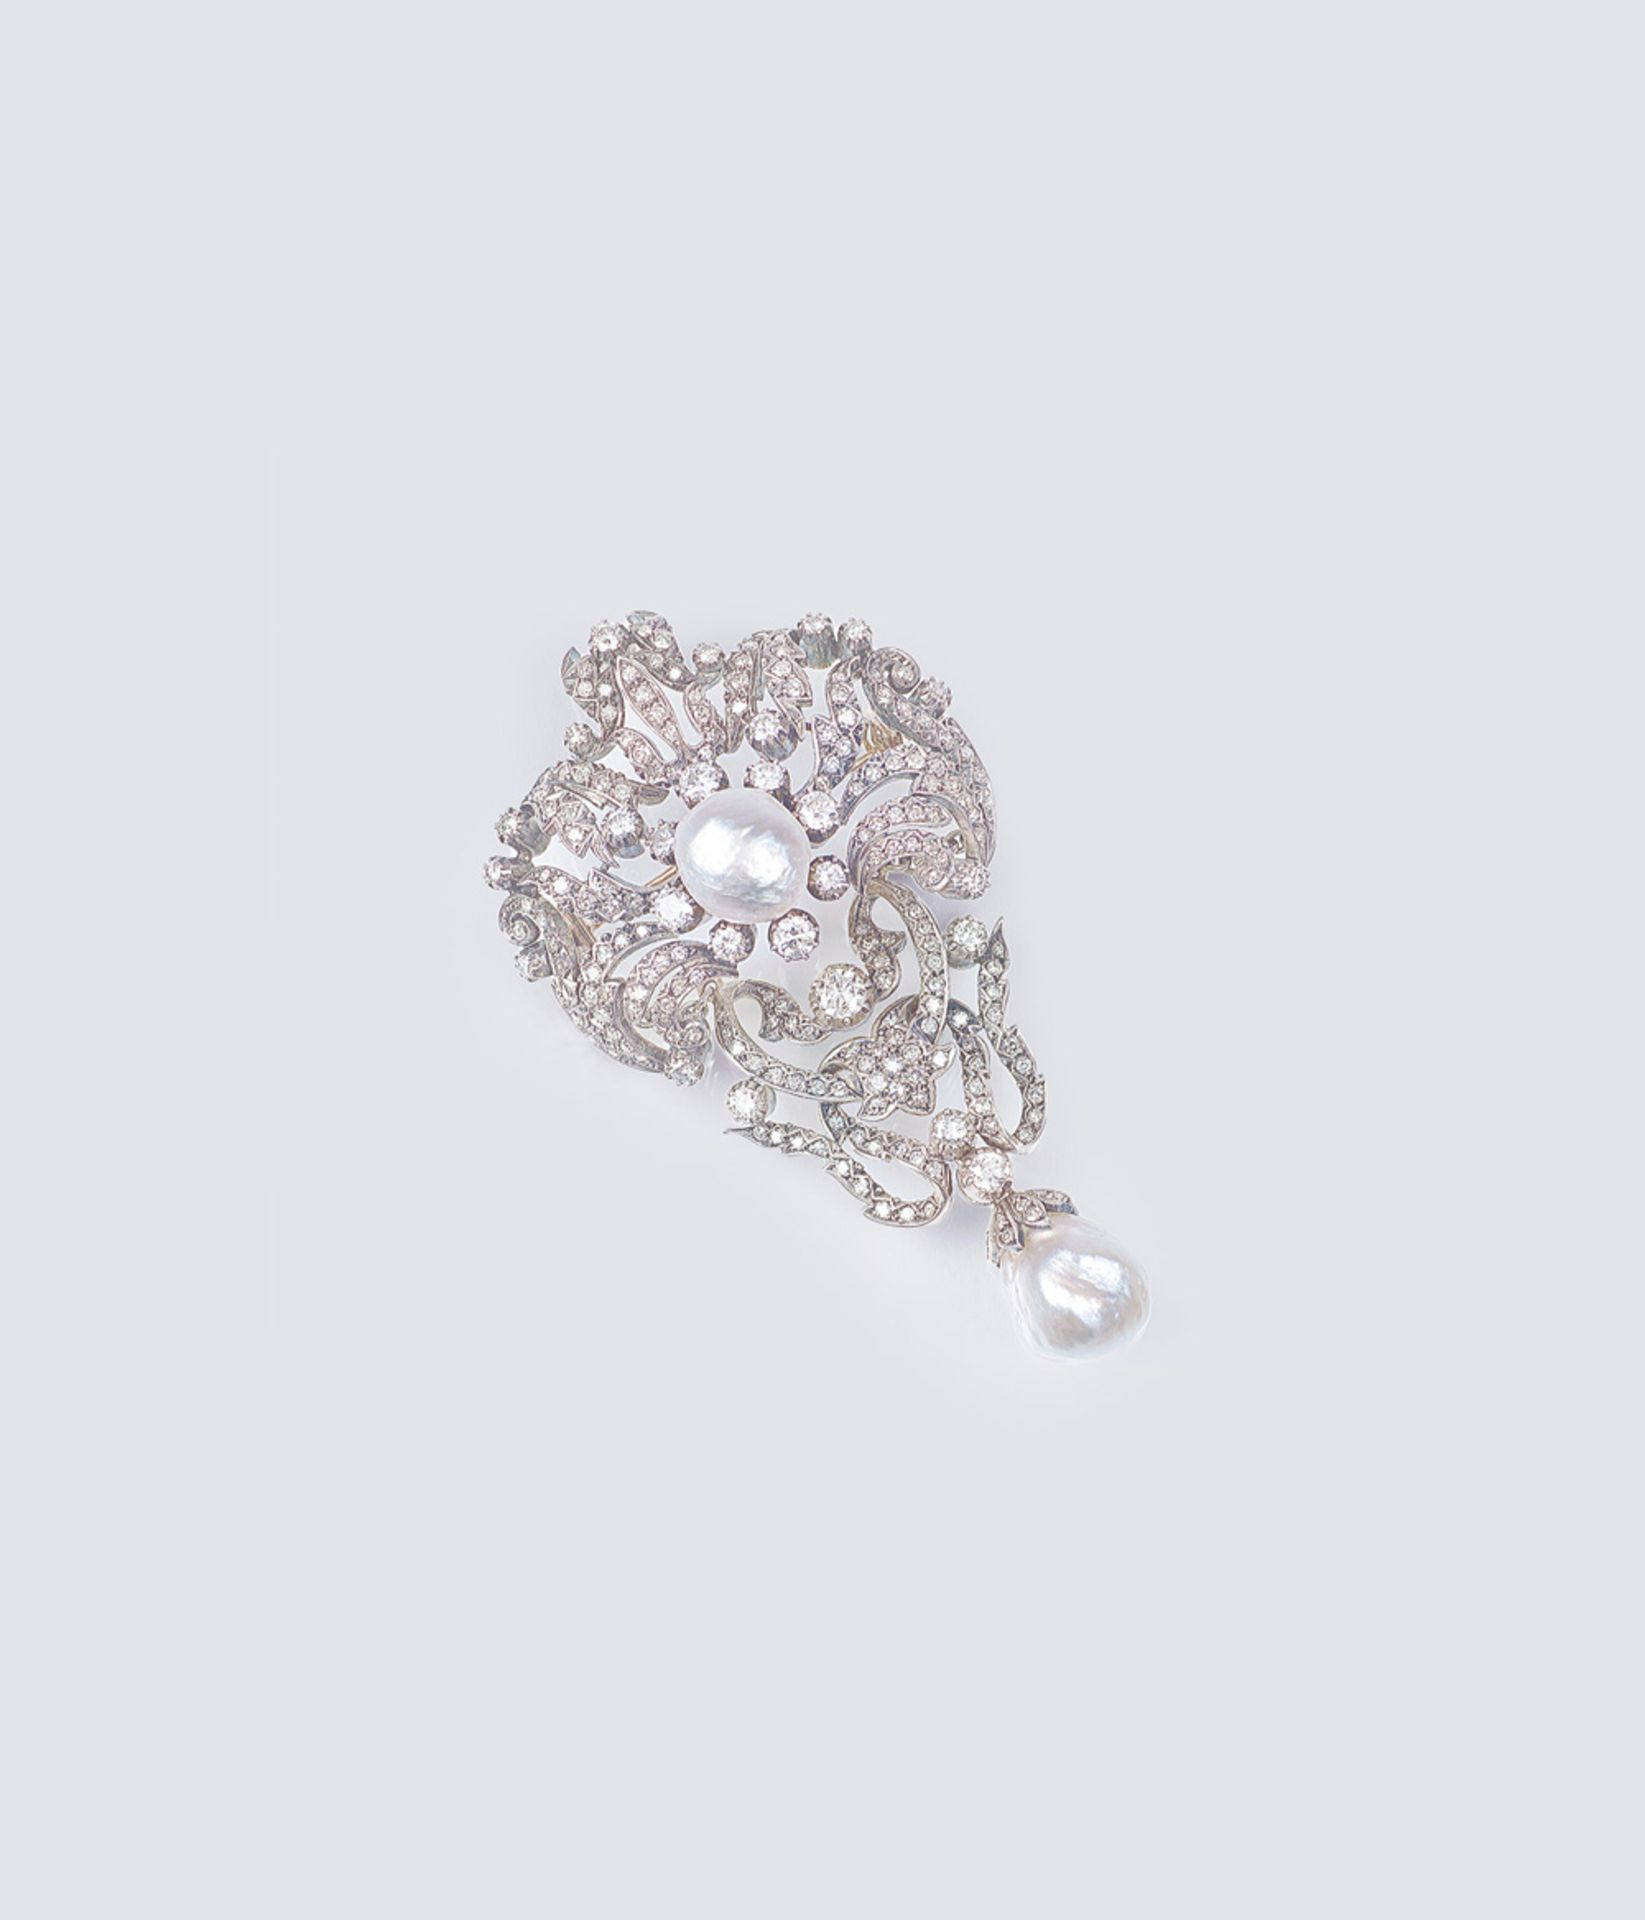 Feine Art-Nouveau Diamant-Brosche mit Barock-Perlen. Um 1915/20. 14 kt. Roségold mit Silber, - Image 2 of 2